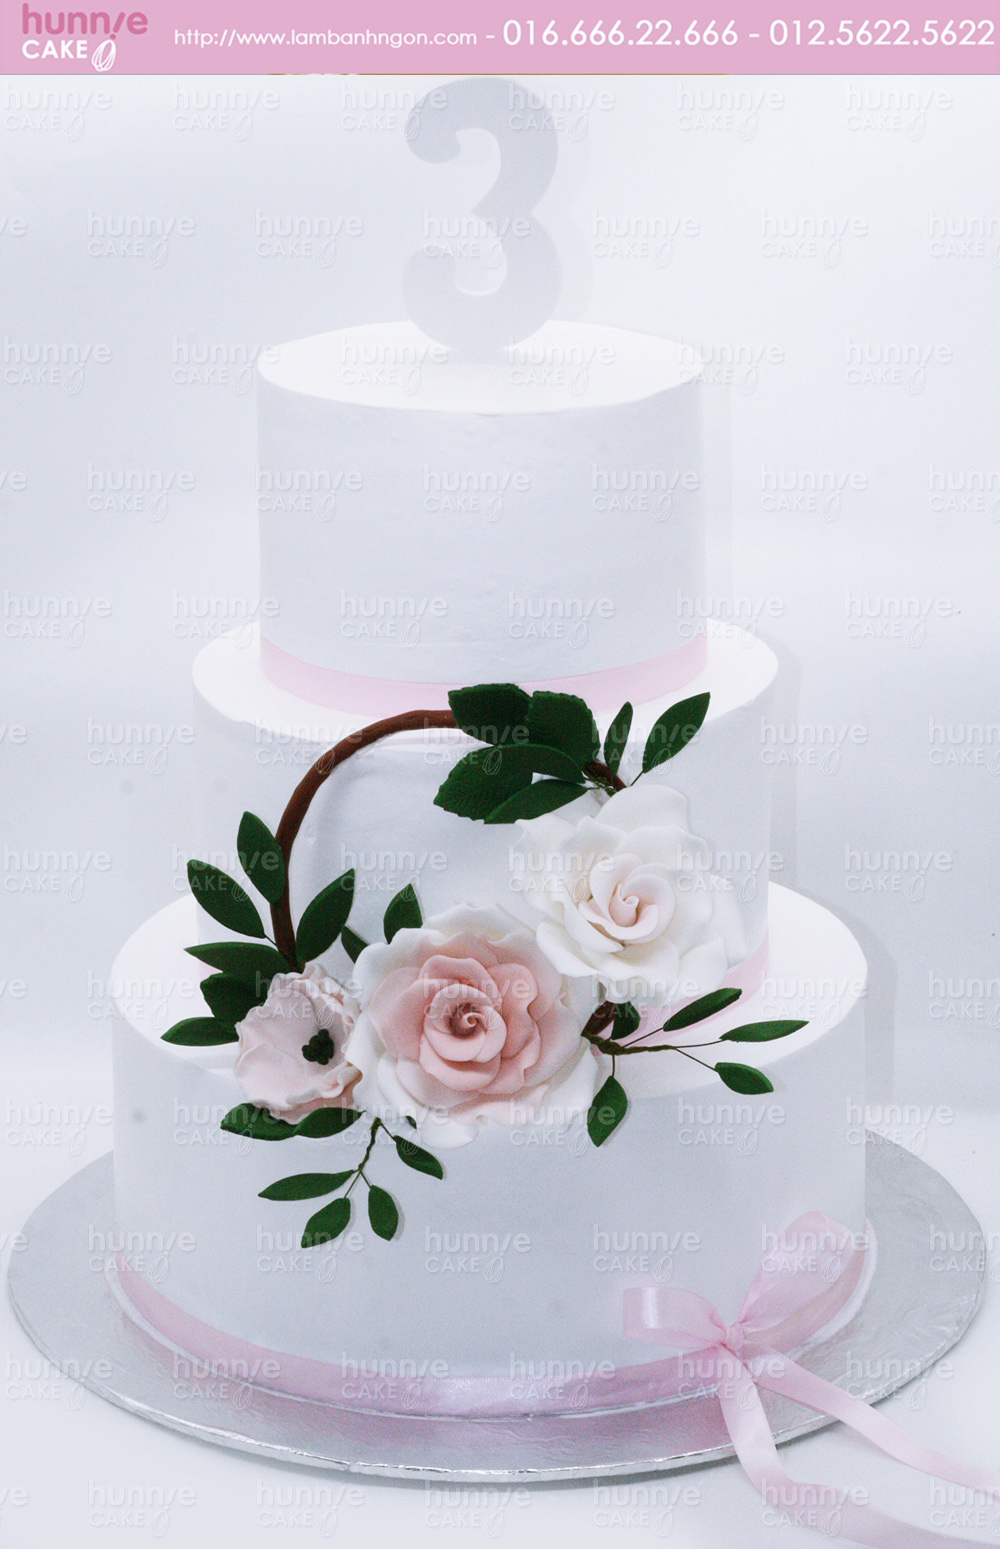 Bánh gato đám cưới, kỷ niệm sinh nhật 3 tầng tông màu trắng trang trí hoa hồng nổi bật 4815 - Bánh ngon đẹp